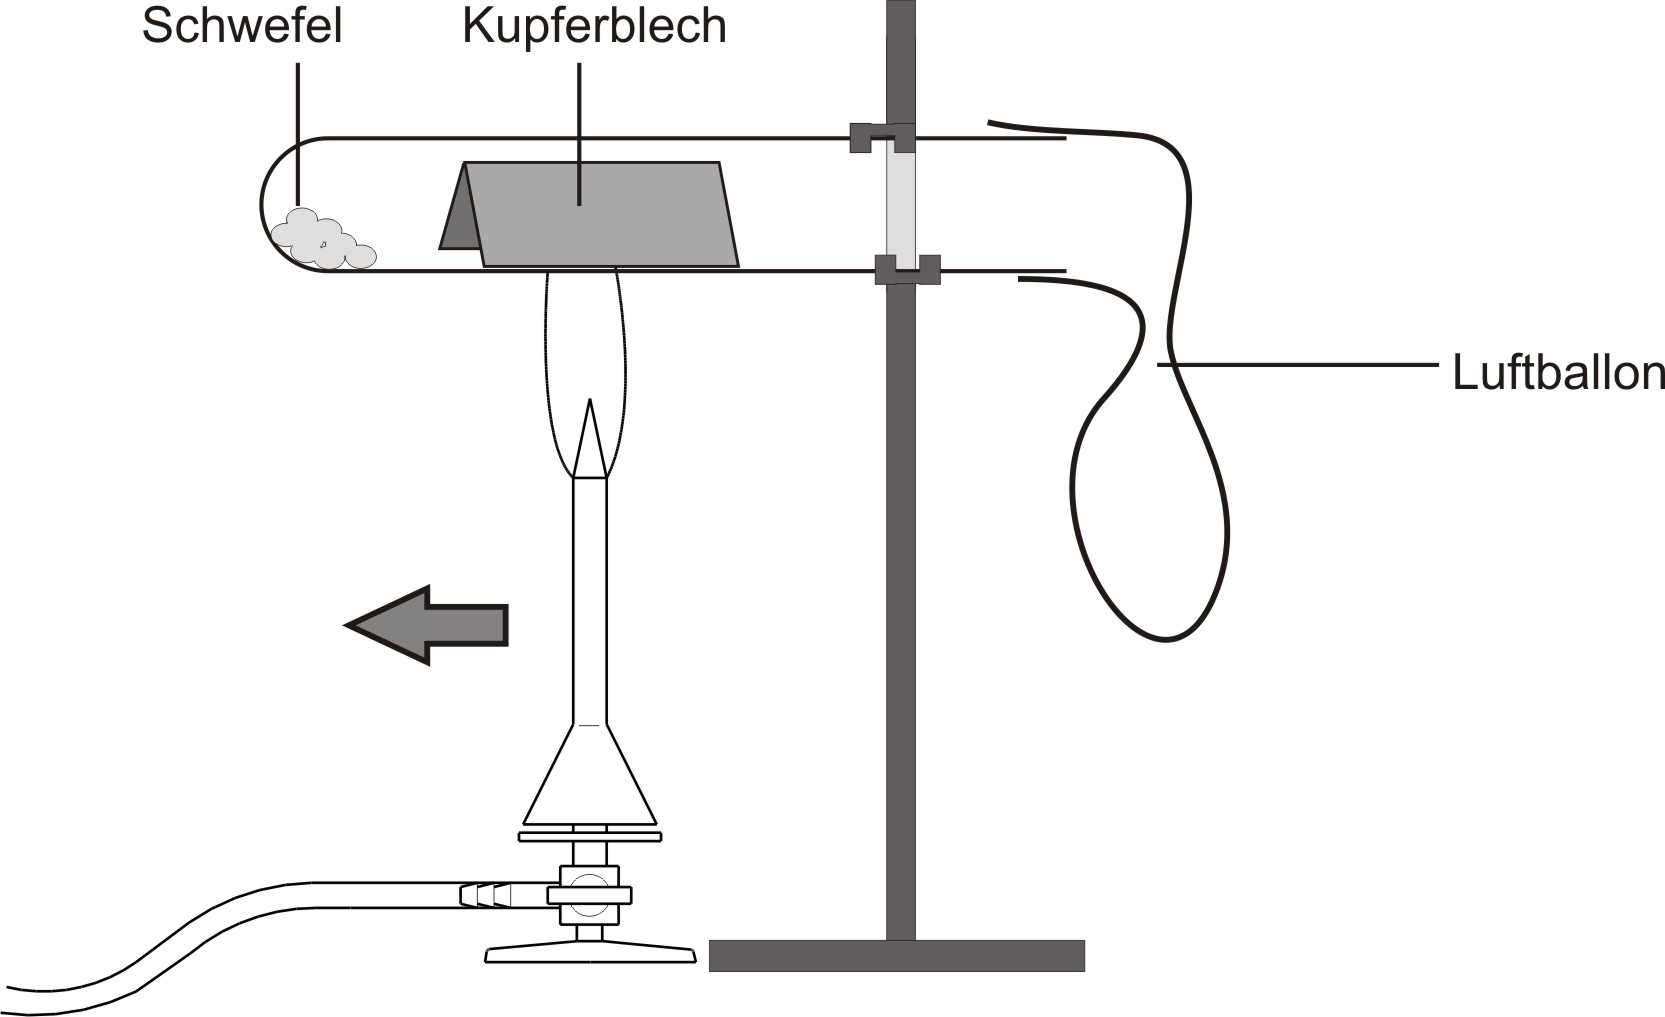 Skizze: Versuchsaufbau für die Reaktion Kupfer mit Schwefel. Reagenzglas wird über einen Teclubrenner befestigt. 